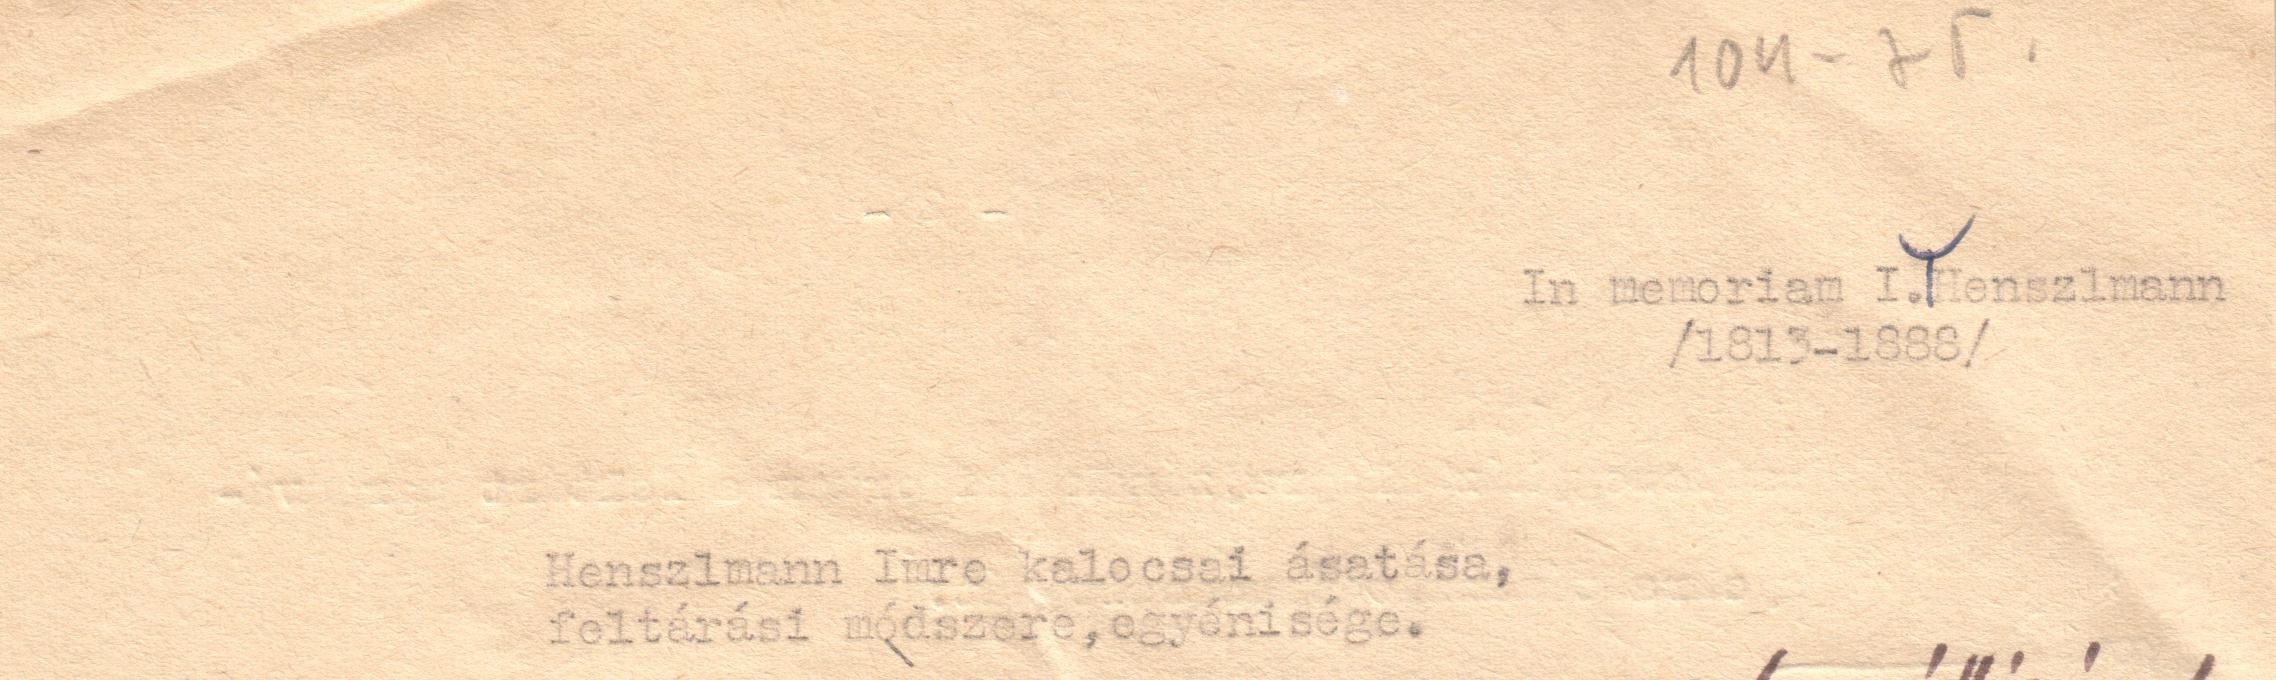 Henszlman Imre kalocsai ásatása, feltárási módszere, egyénisége c. tanulmány gépirata és a szerző levele. (Viski Károly Múzeum Kalocsa RR-F)